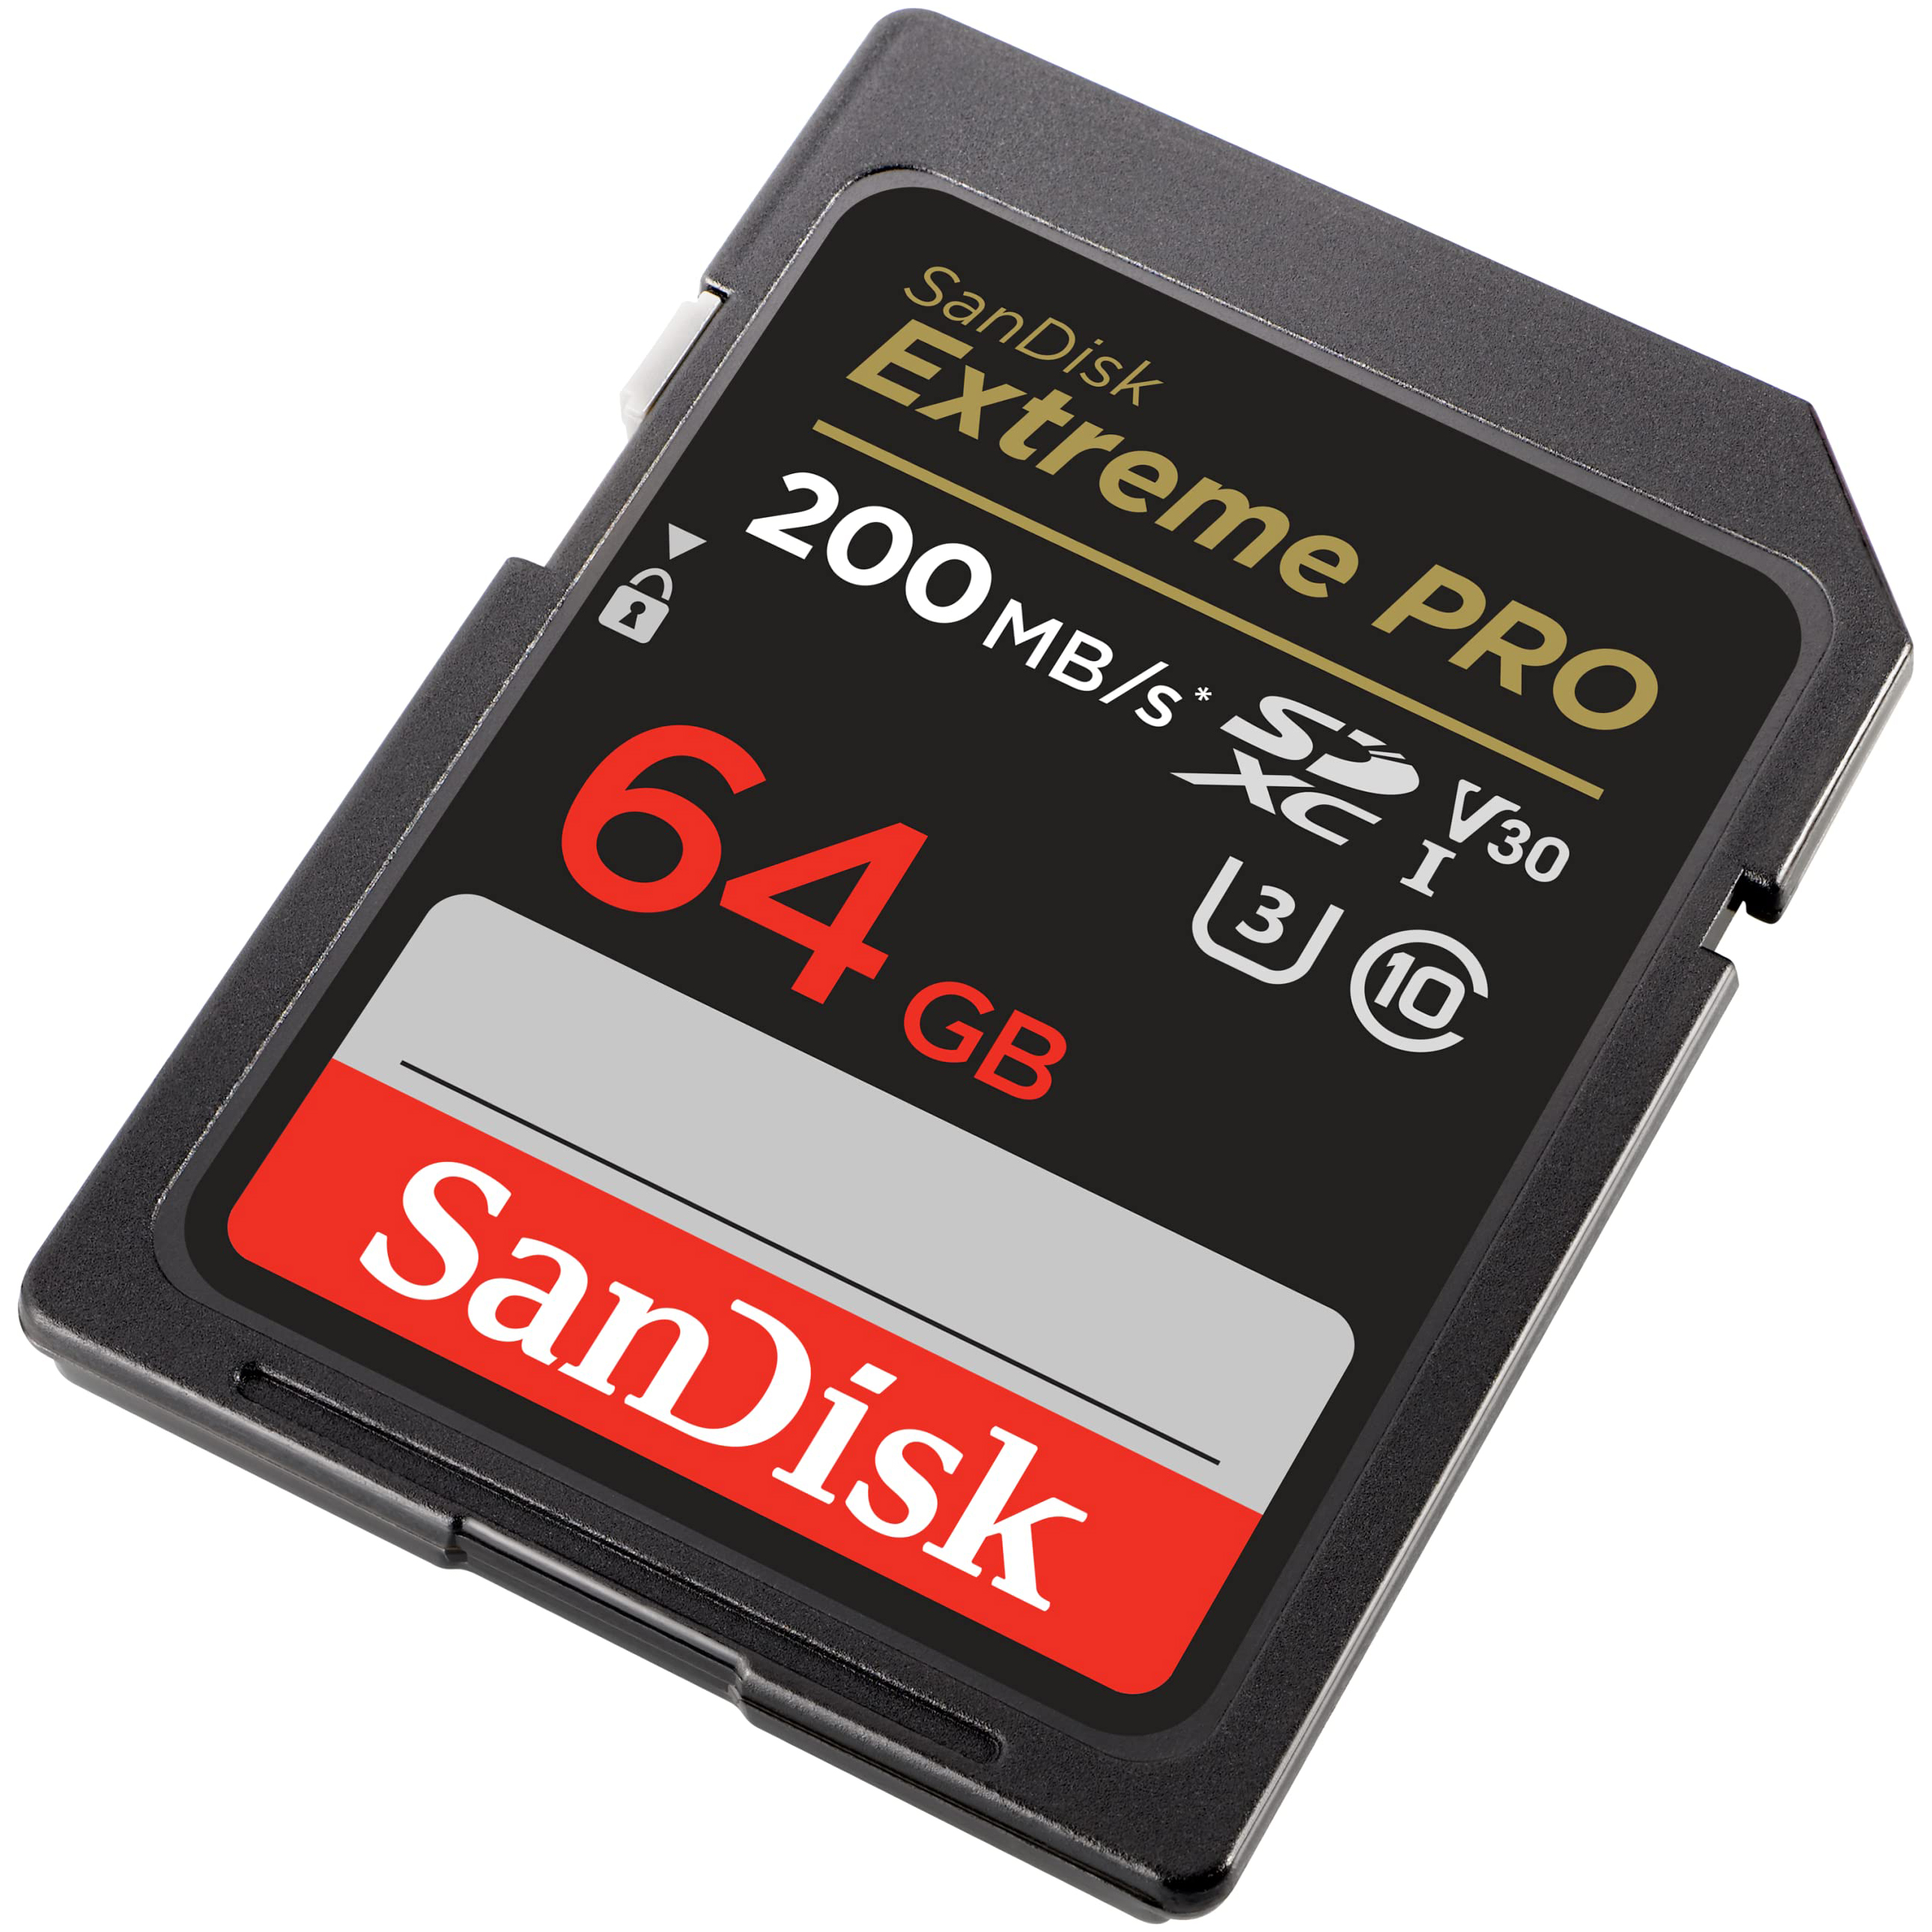 Thẻ nhớ SD 64GB SanDisk Extreme Pro 200 MB/s bảo hành 5 năm